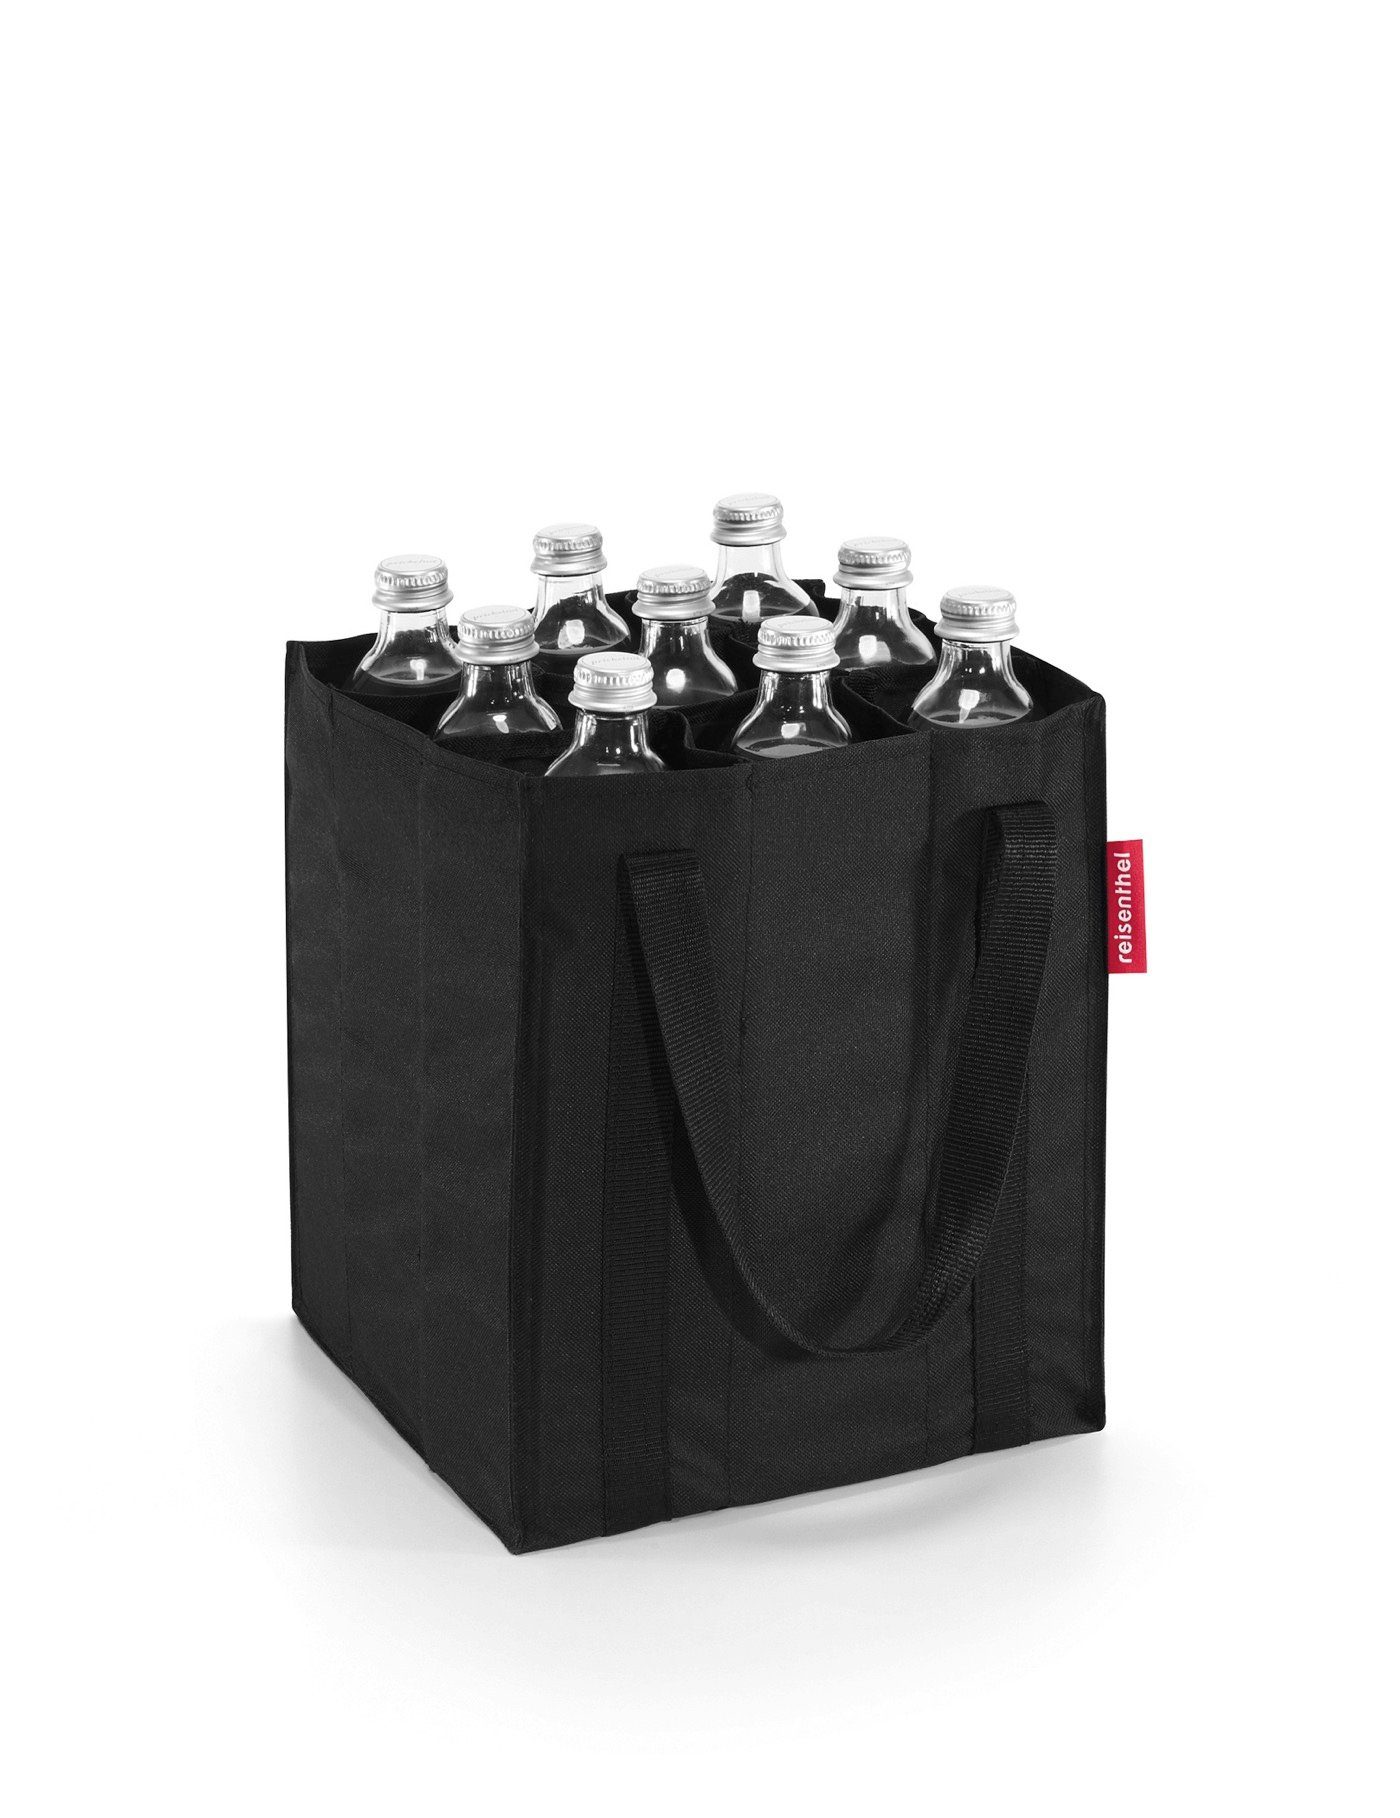 REISENTHEL® Flaschenkorb bottlebag, Flaschenträger Flaschentasche bottlebag black Flaschenkorb Einkaufstasche